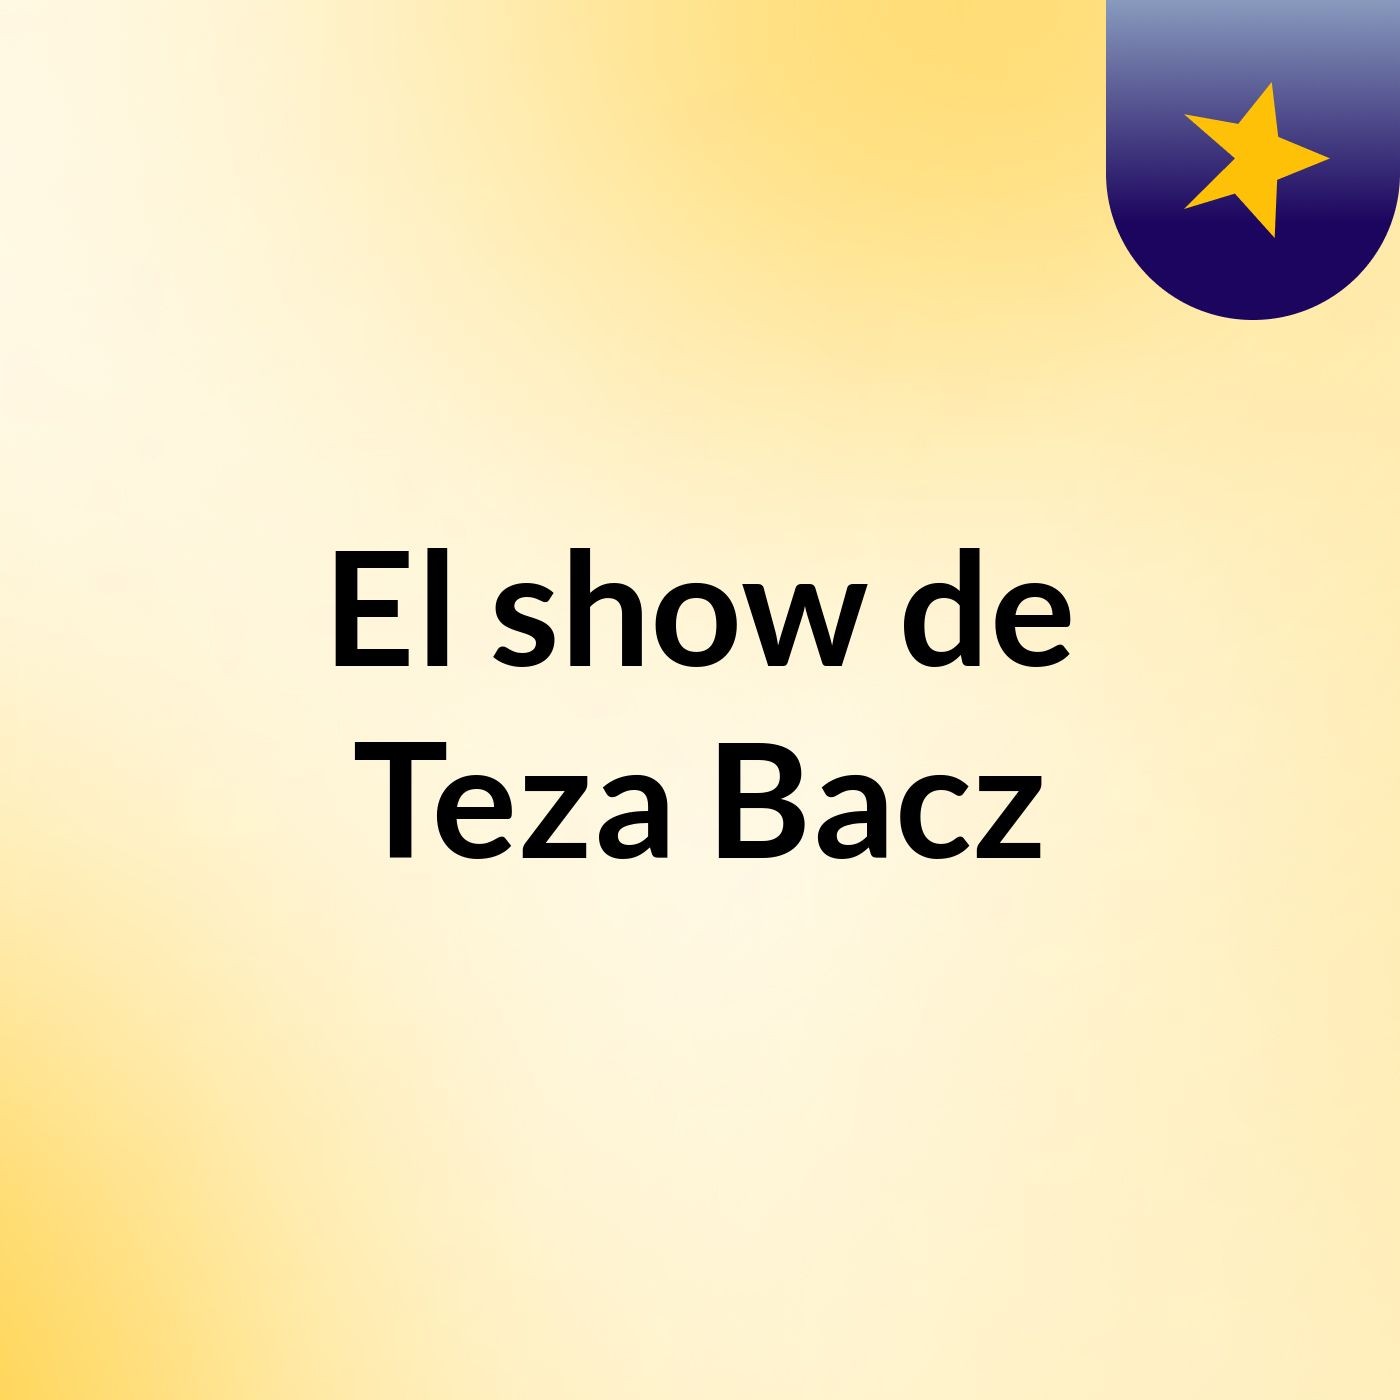 El show de Teza Bacz